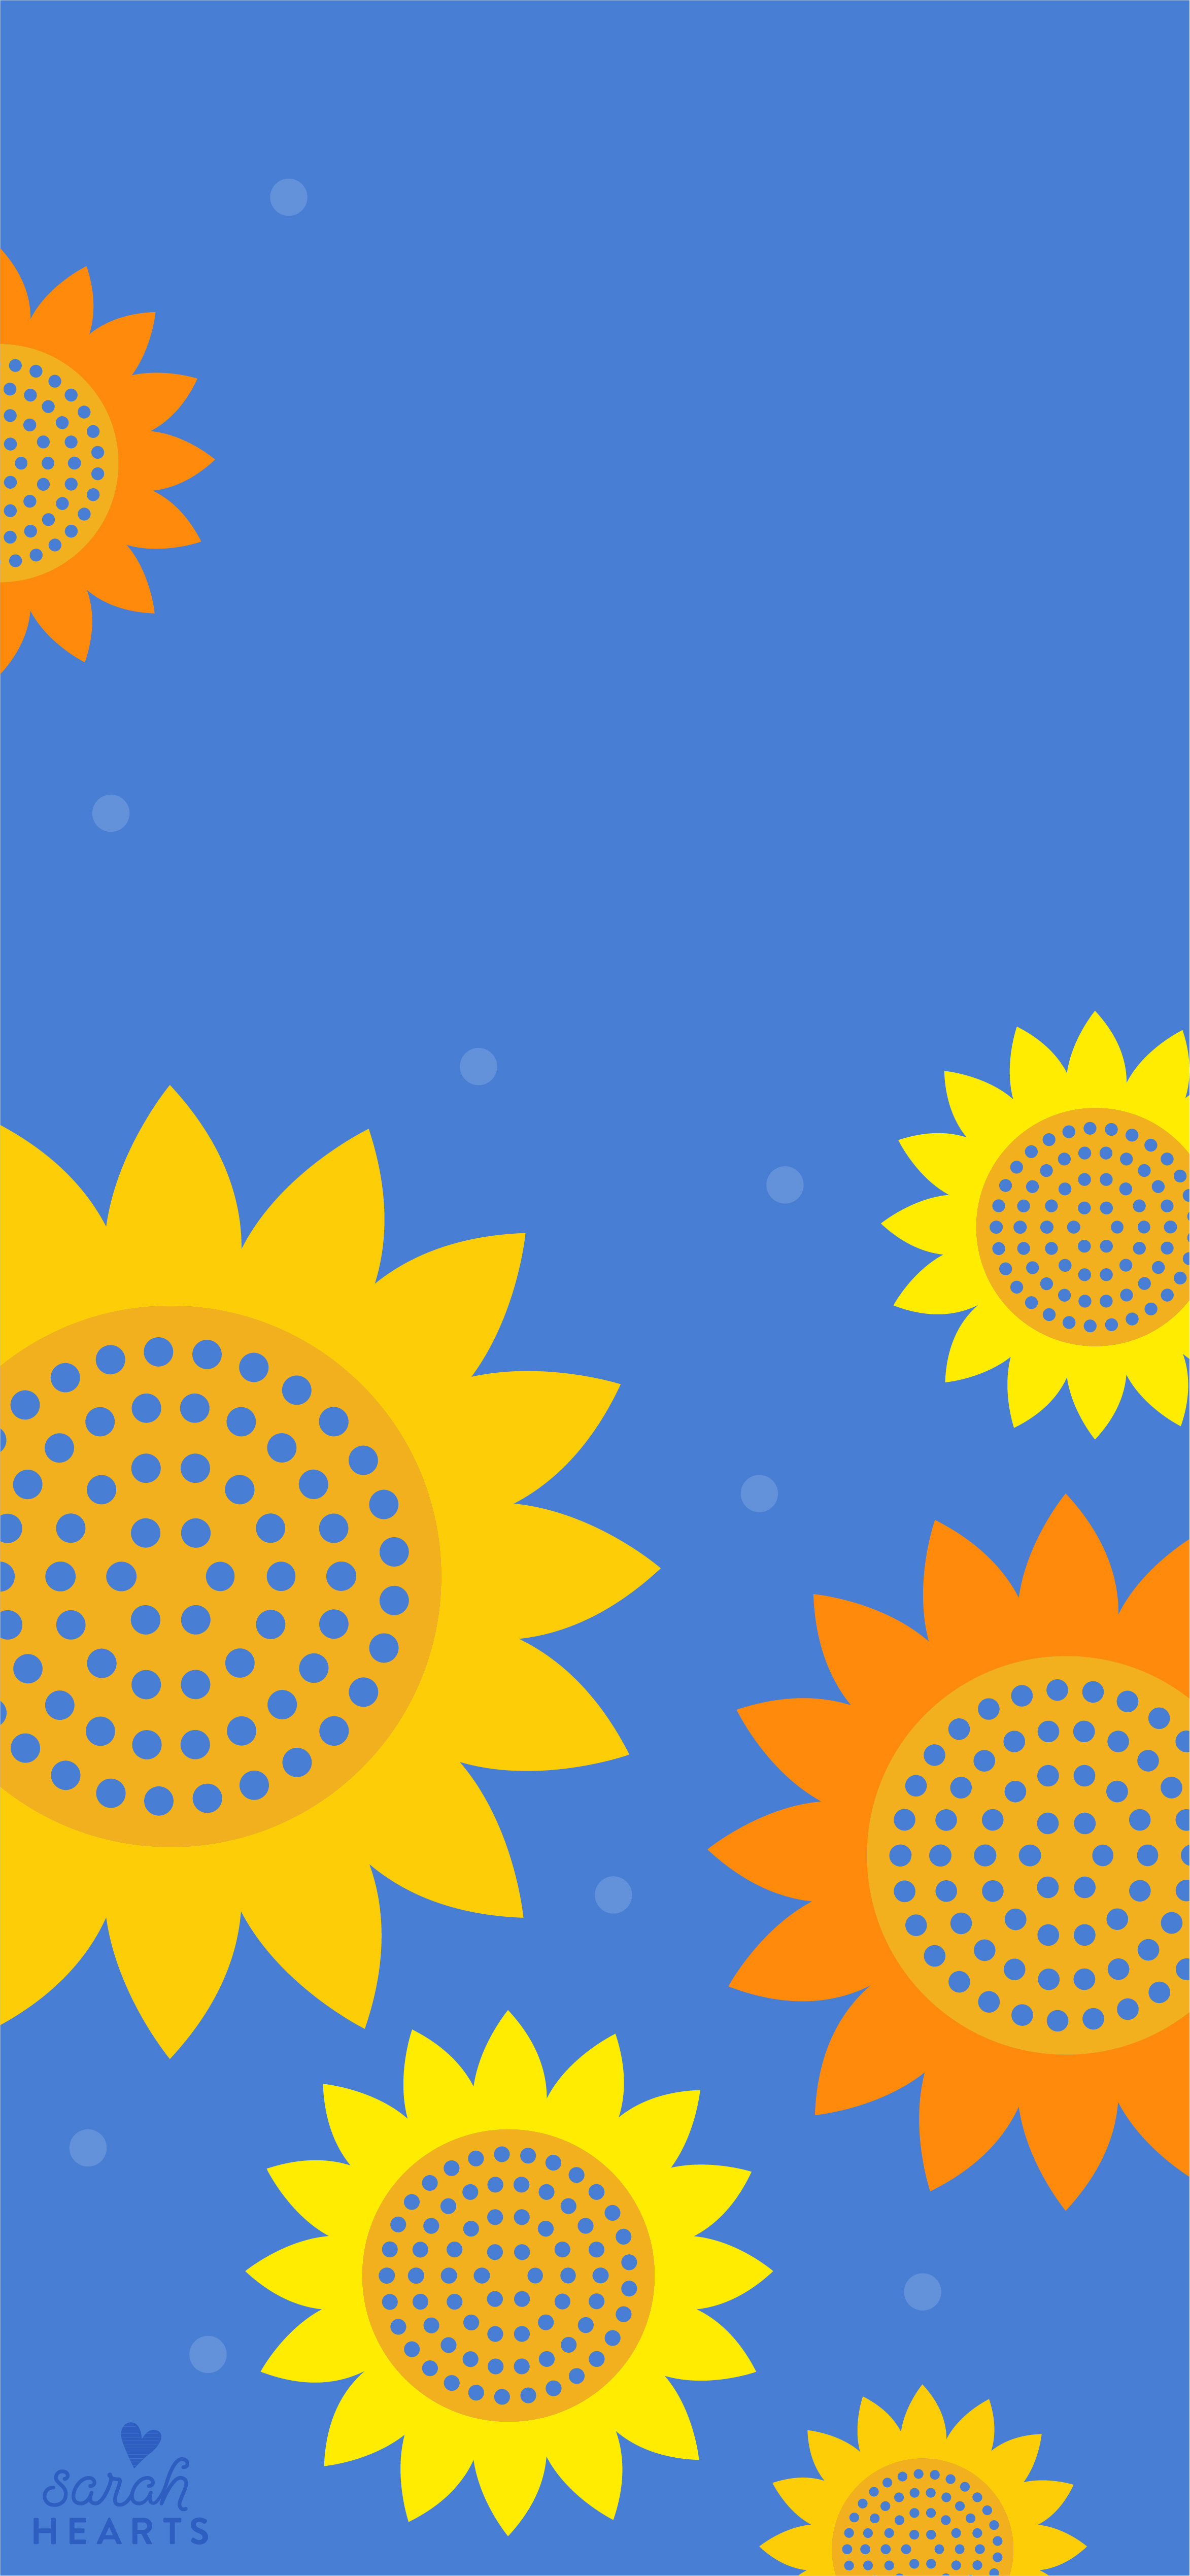 September 2018 Sunflower Calendar Wallpaper Sarah Hearts